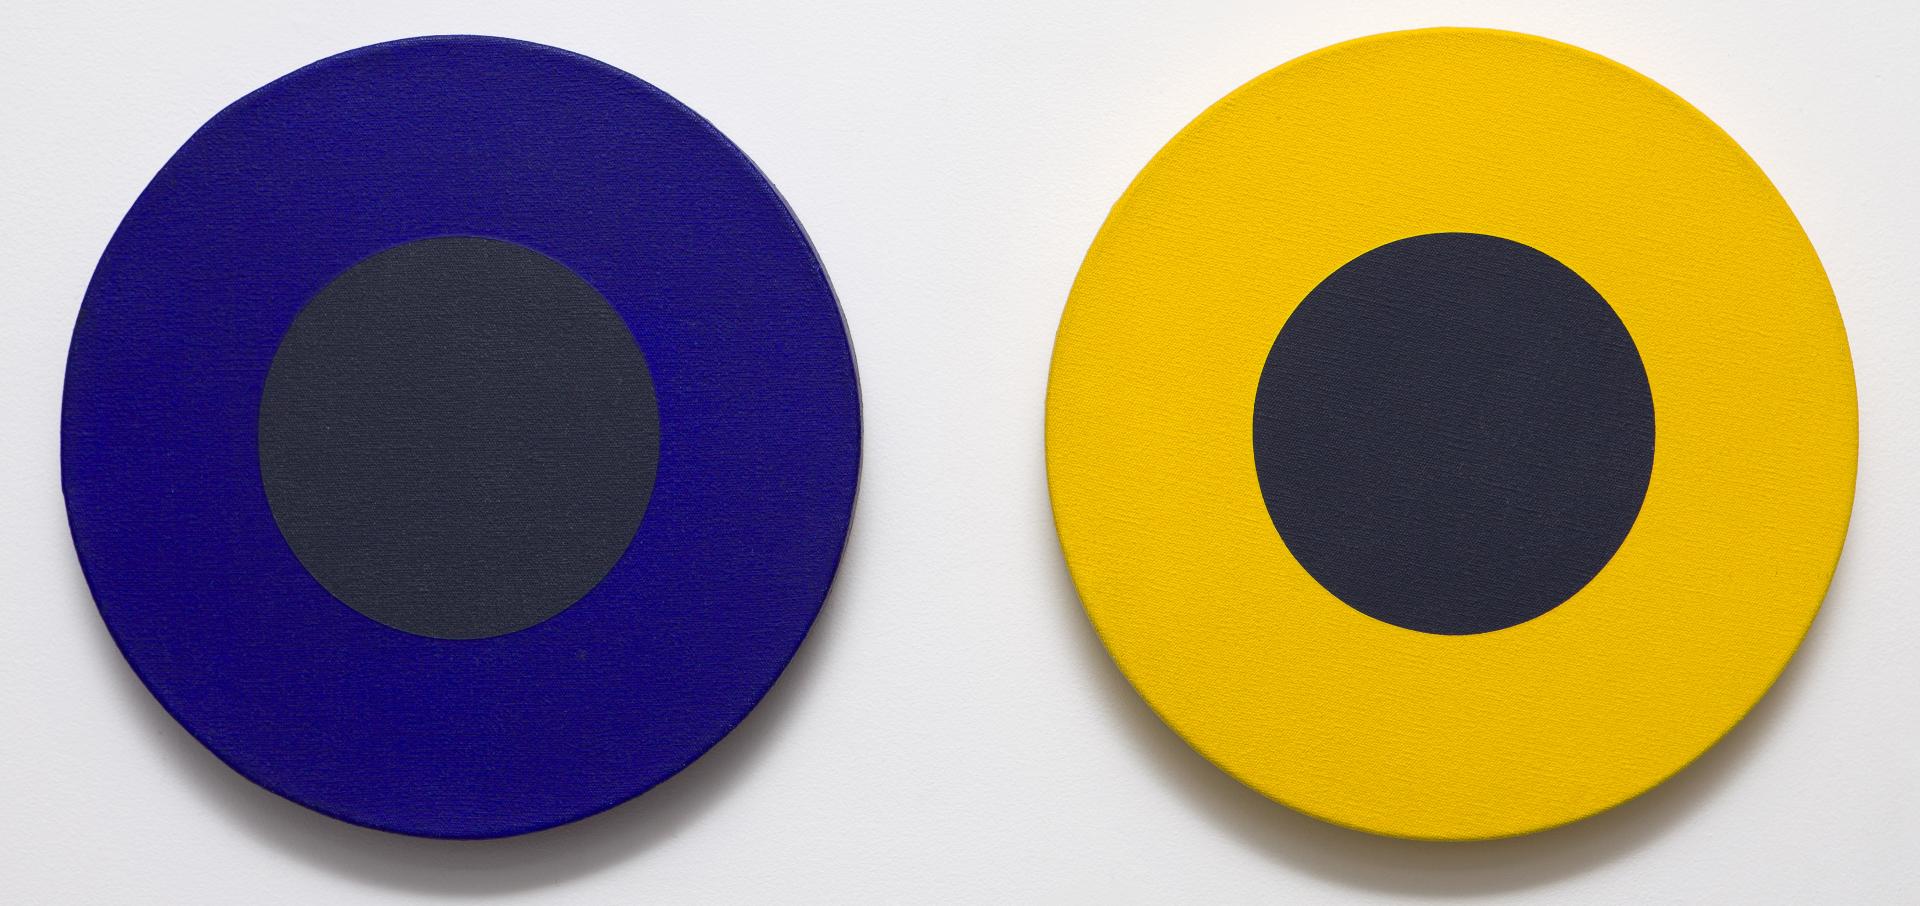 Claude Tousignant (1932) - Double 12 en bleu, jaune et noir